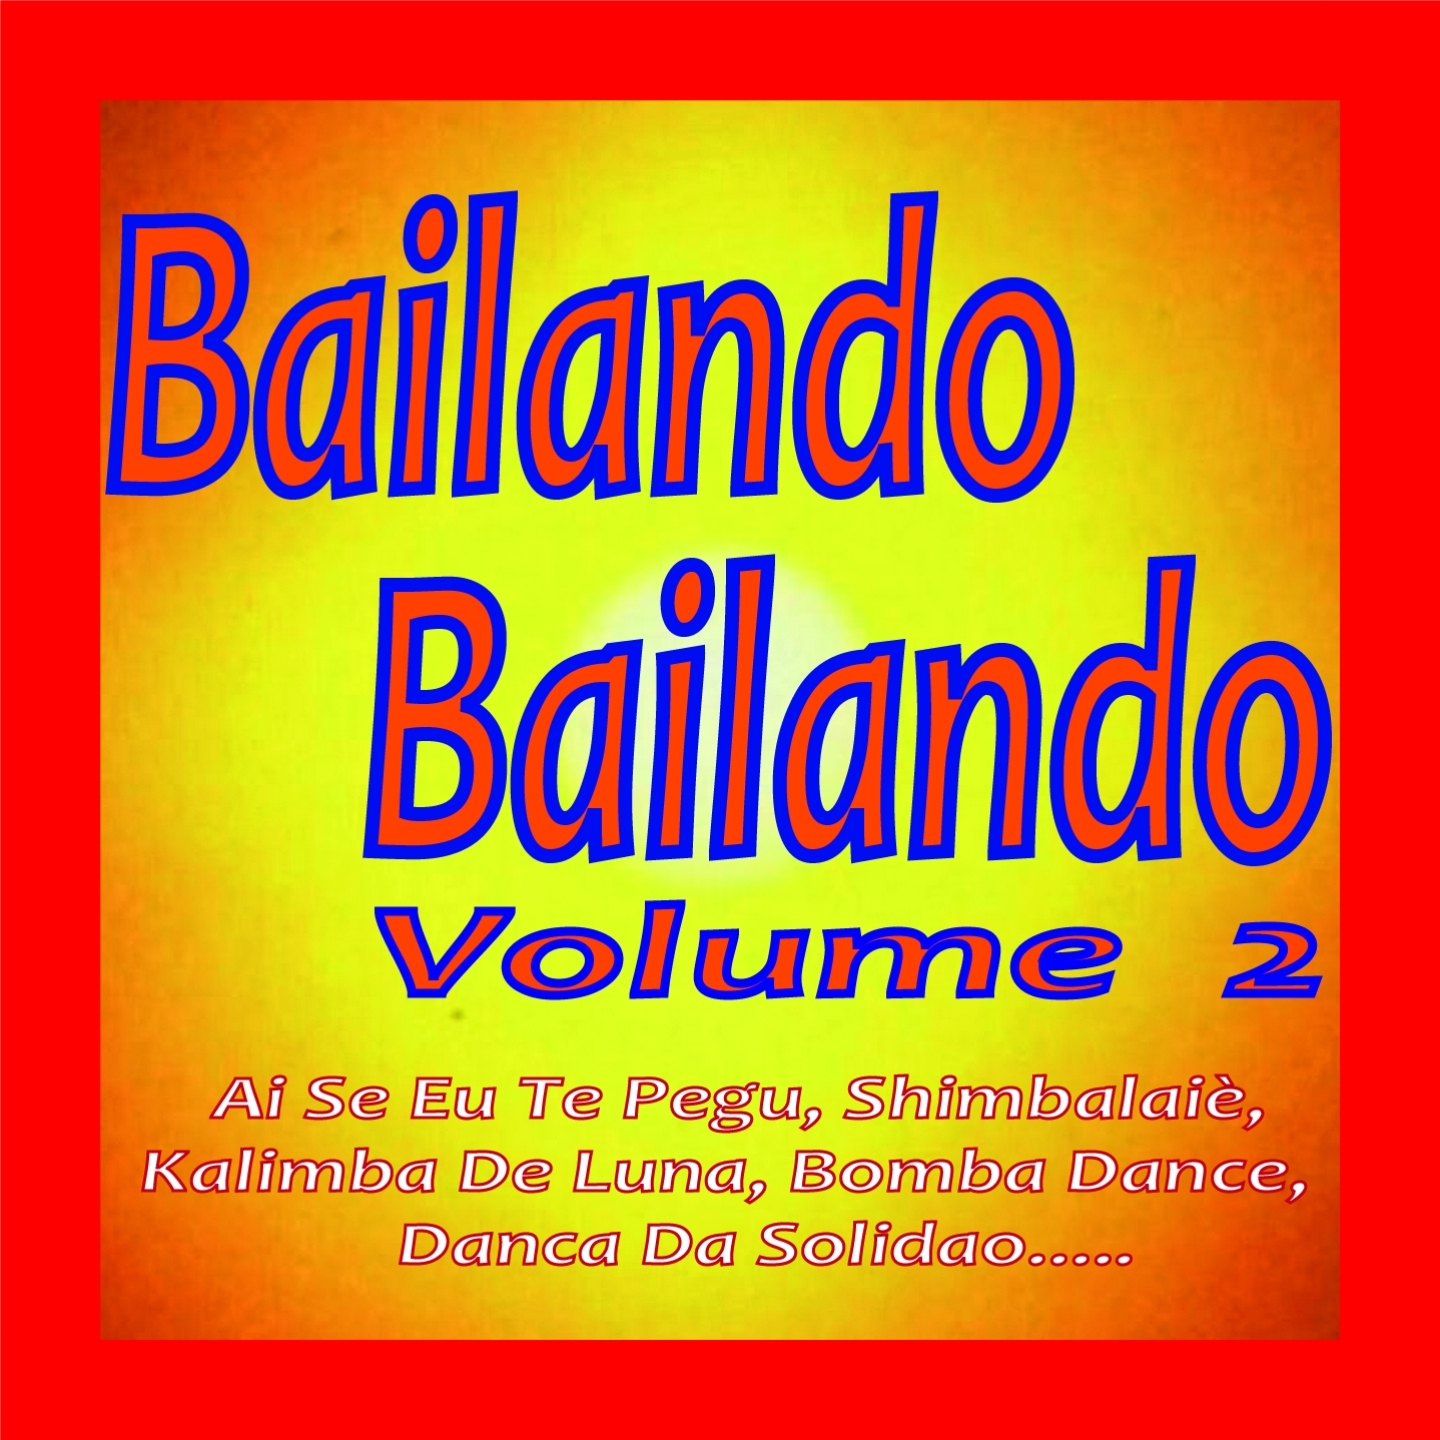 Bailando Bailando, Vol. 2 (Ai Se Eu Te Pegu, Shimbalaiè, Kalimba de Luna, Bomba Dance, Danca da Solidao.....)